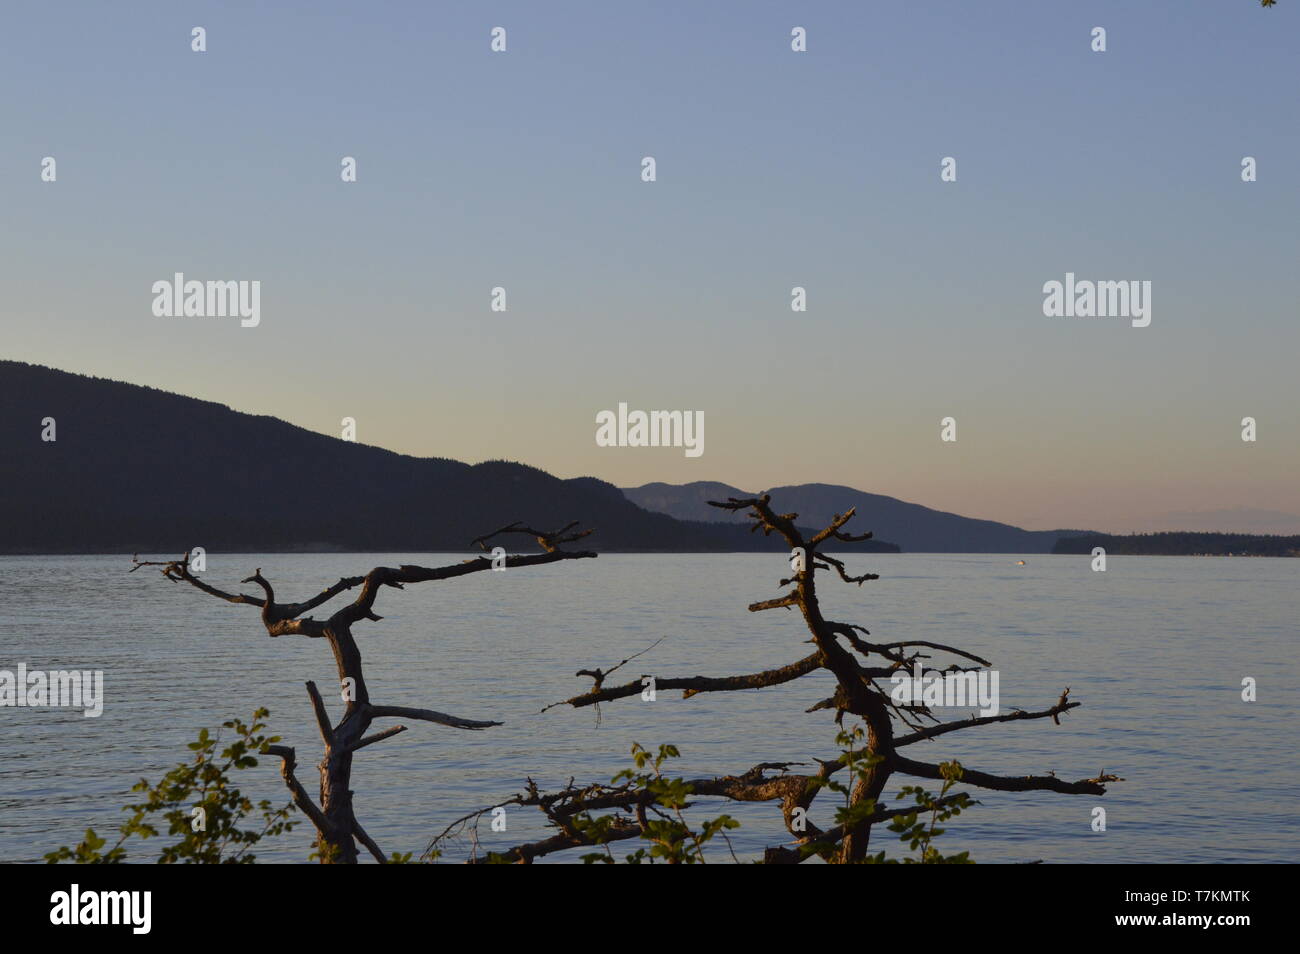 Ein toter Zedernbaum, der am Strand liegt, aß Fidalgo Island, Washington State. Stockfoto